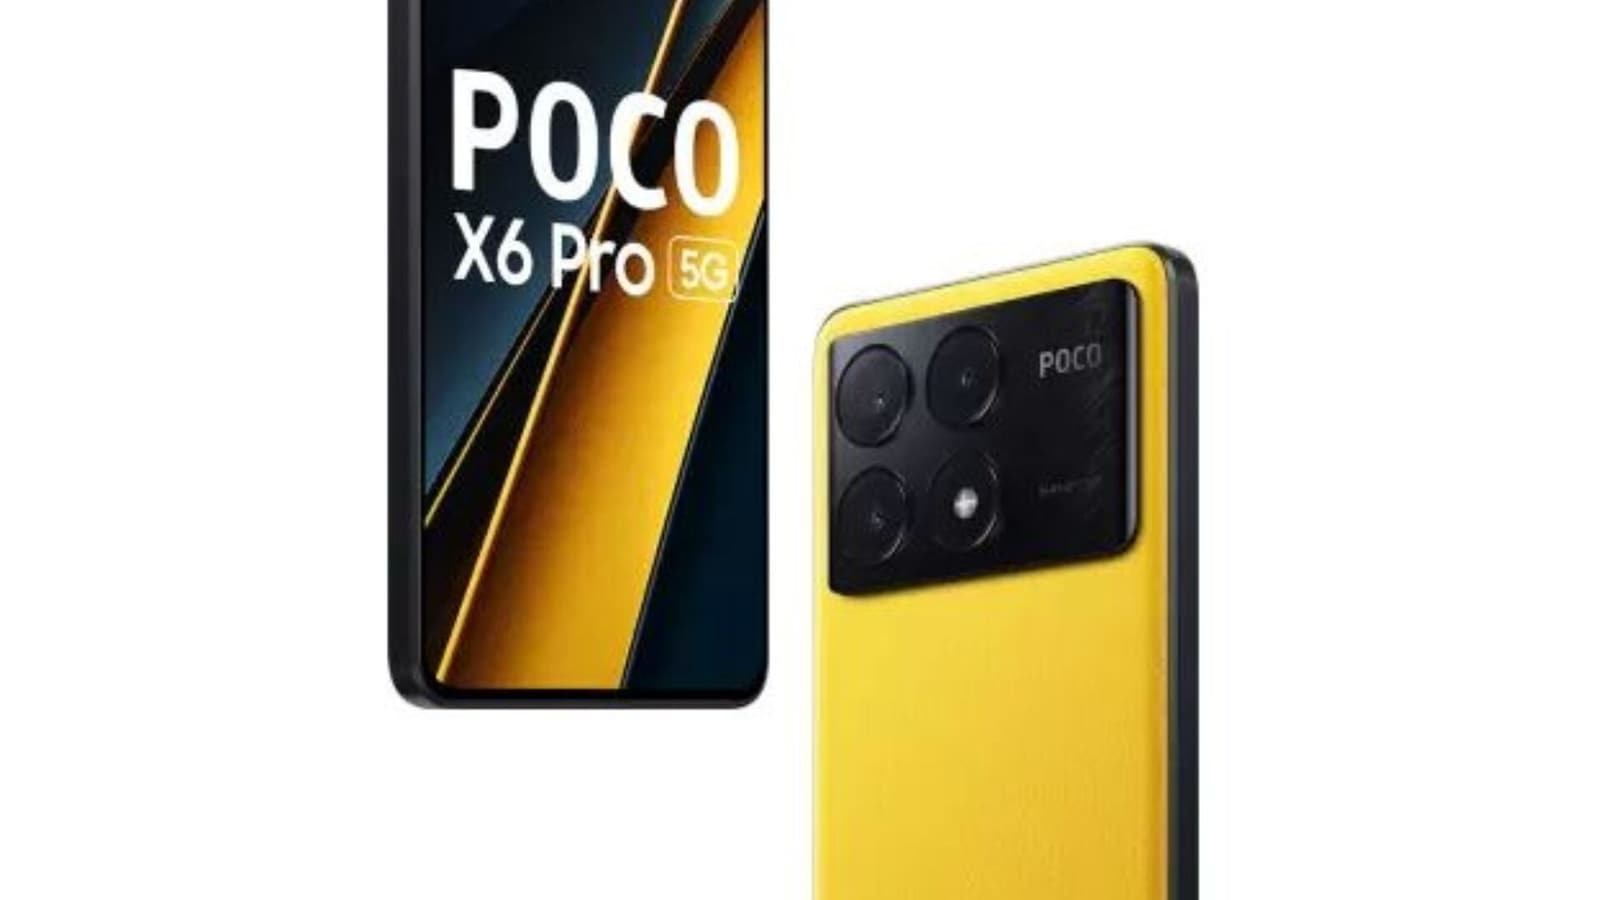 Poco X6 Pro launched in the premium mid-range segment; touts